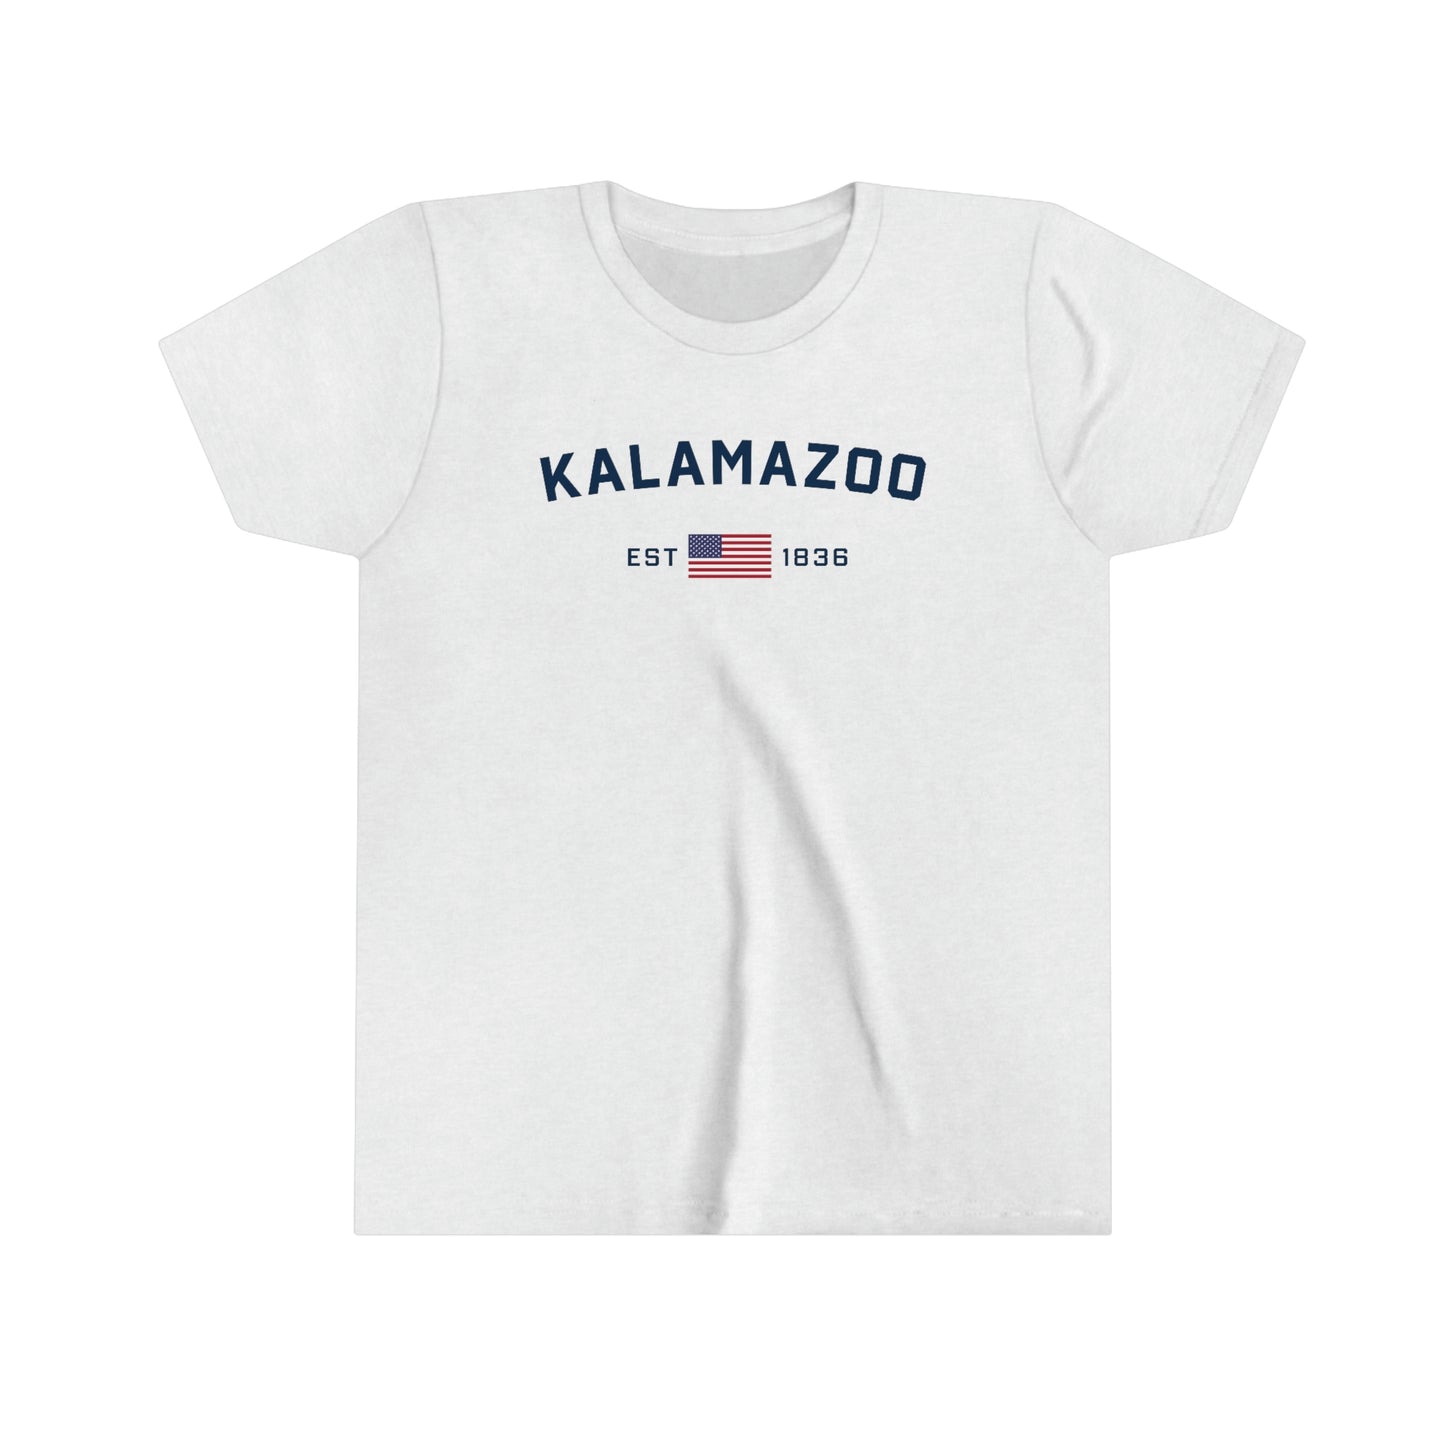 'Kalamazoo EST 1836' T-Shirt | Youth Short Sleeve